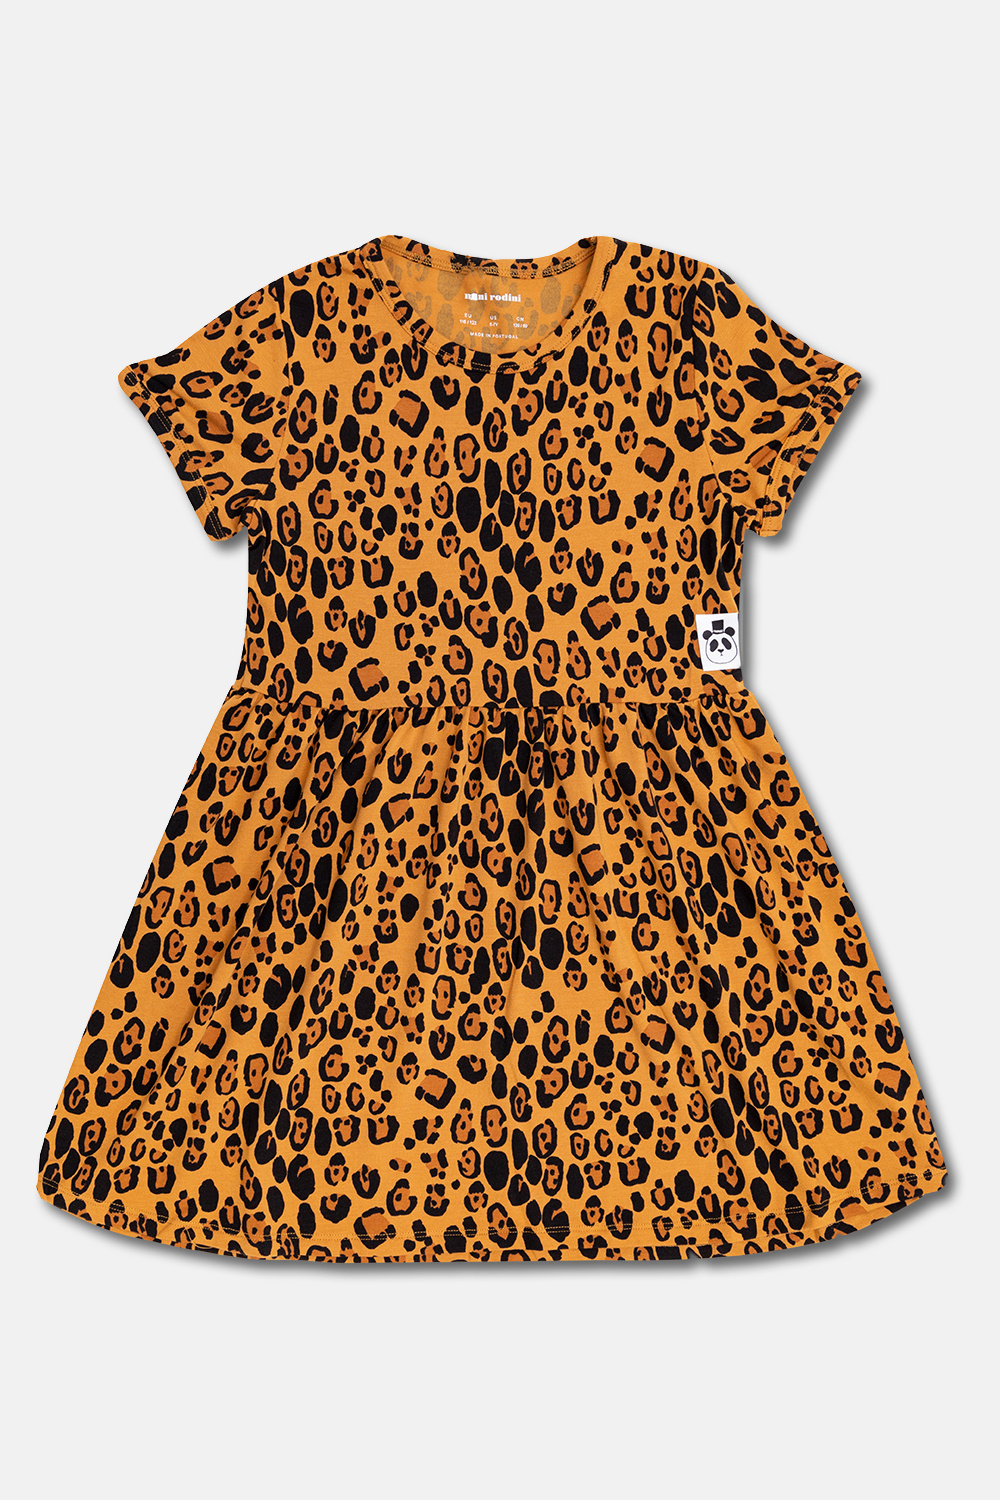 Mini Rodini Leopard-print Fit dress